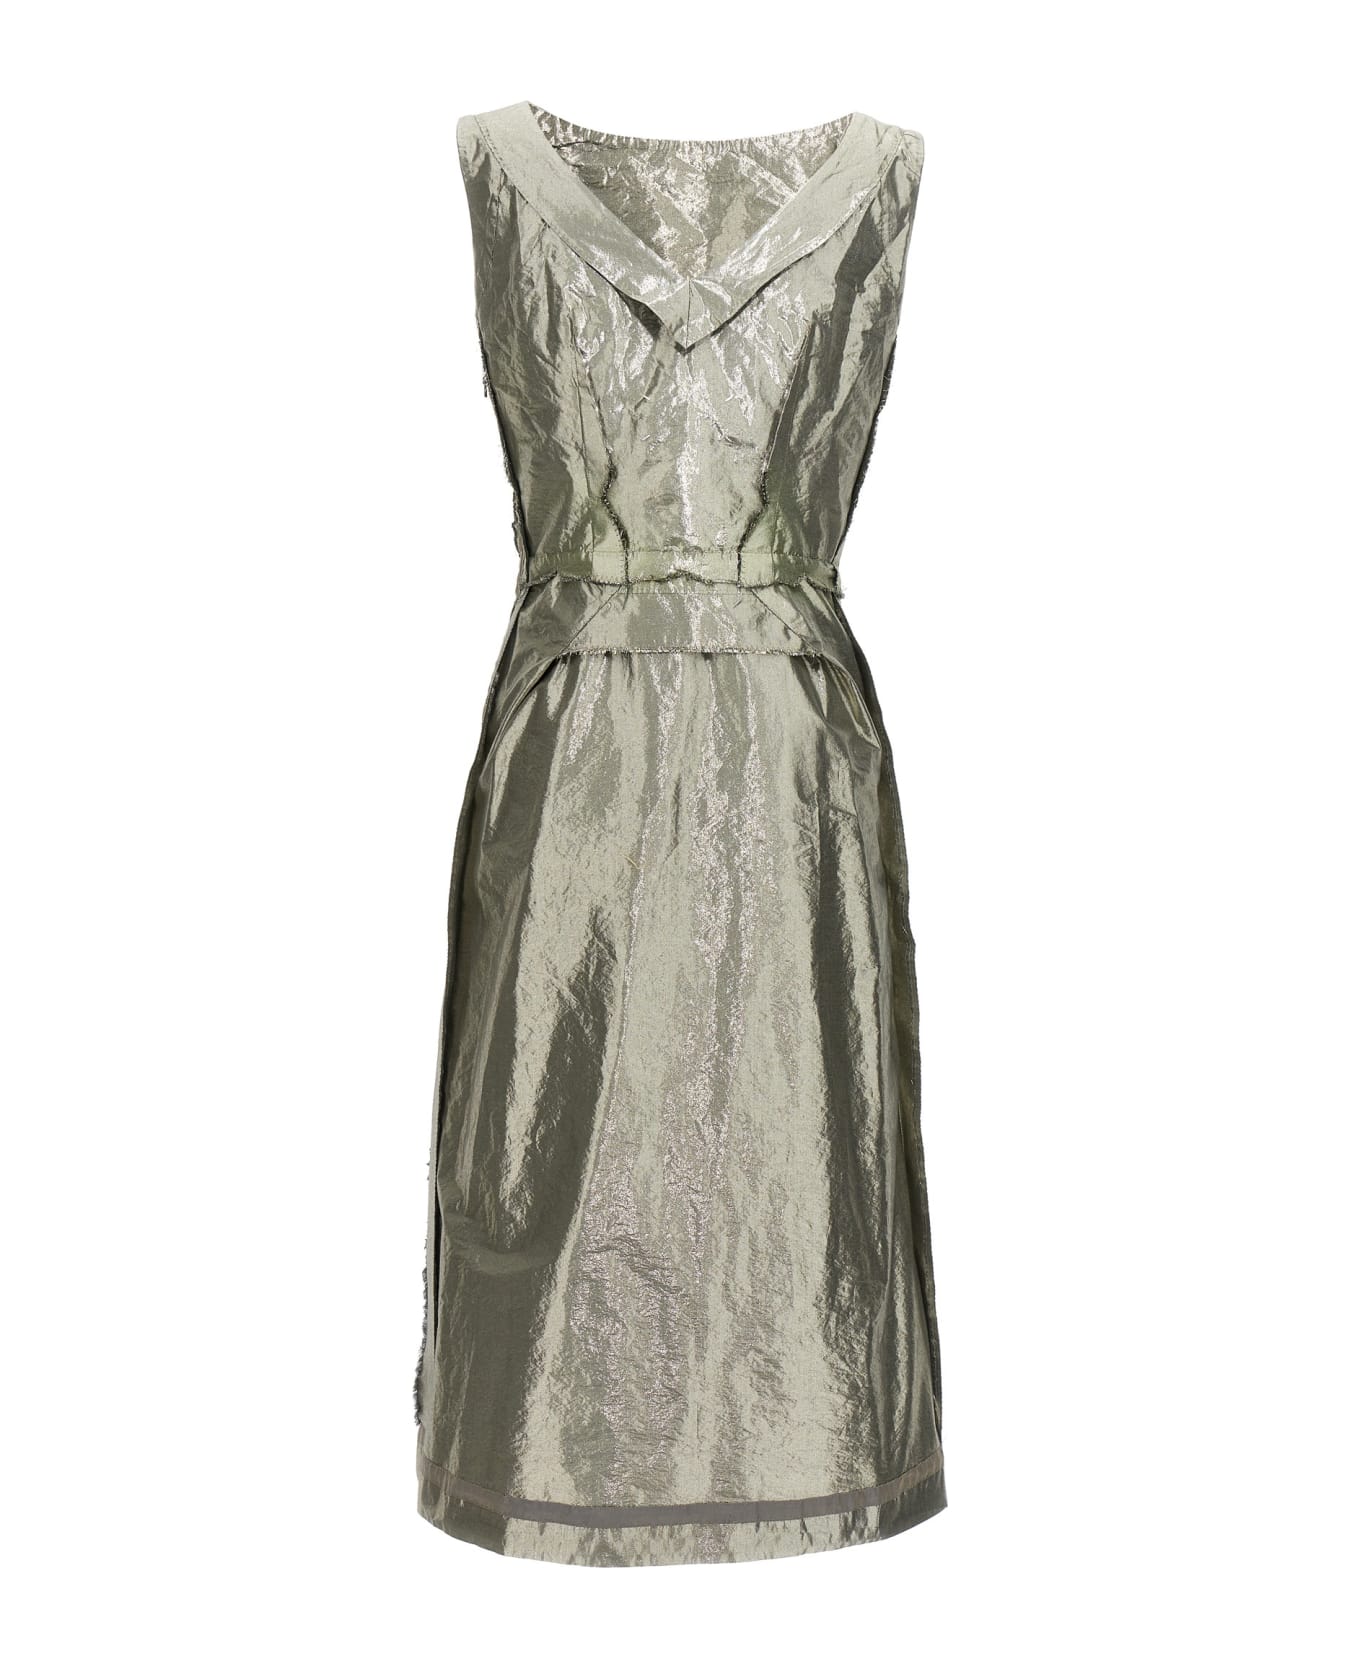 Maison Margiela Laminated Dress - Silver